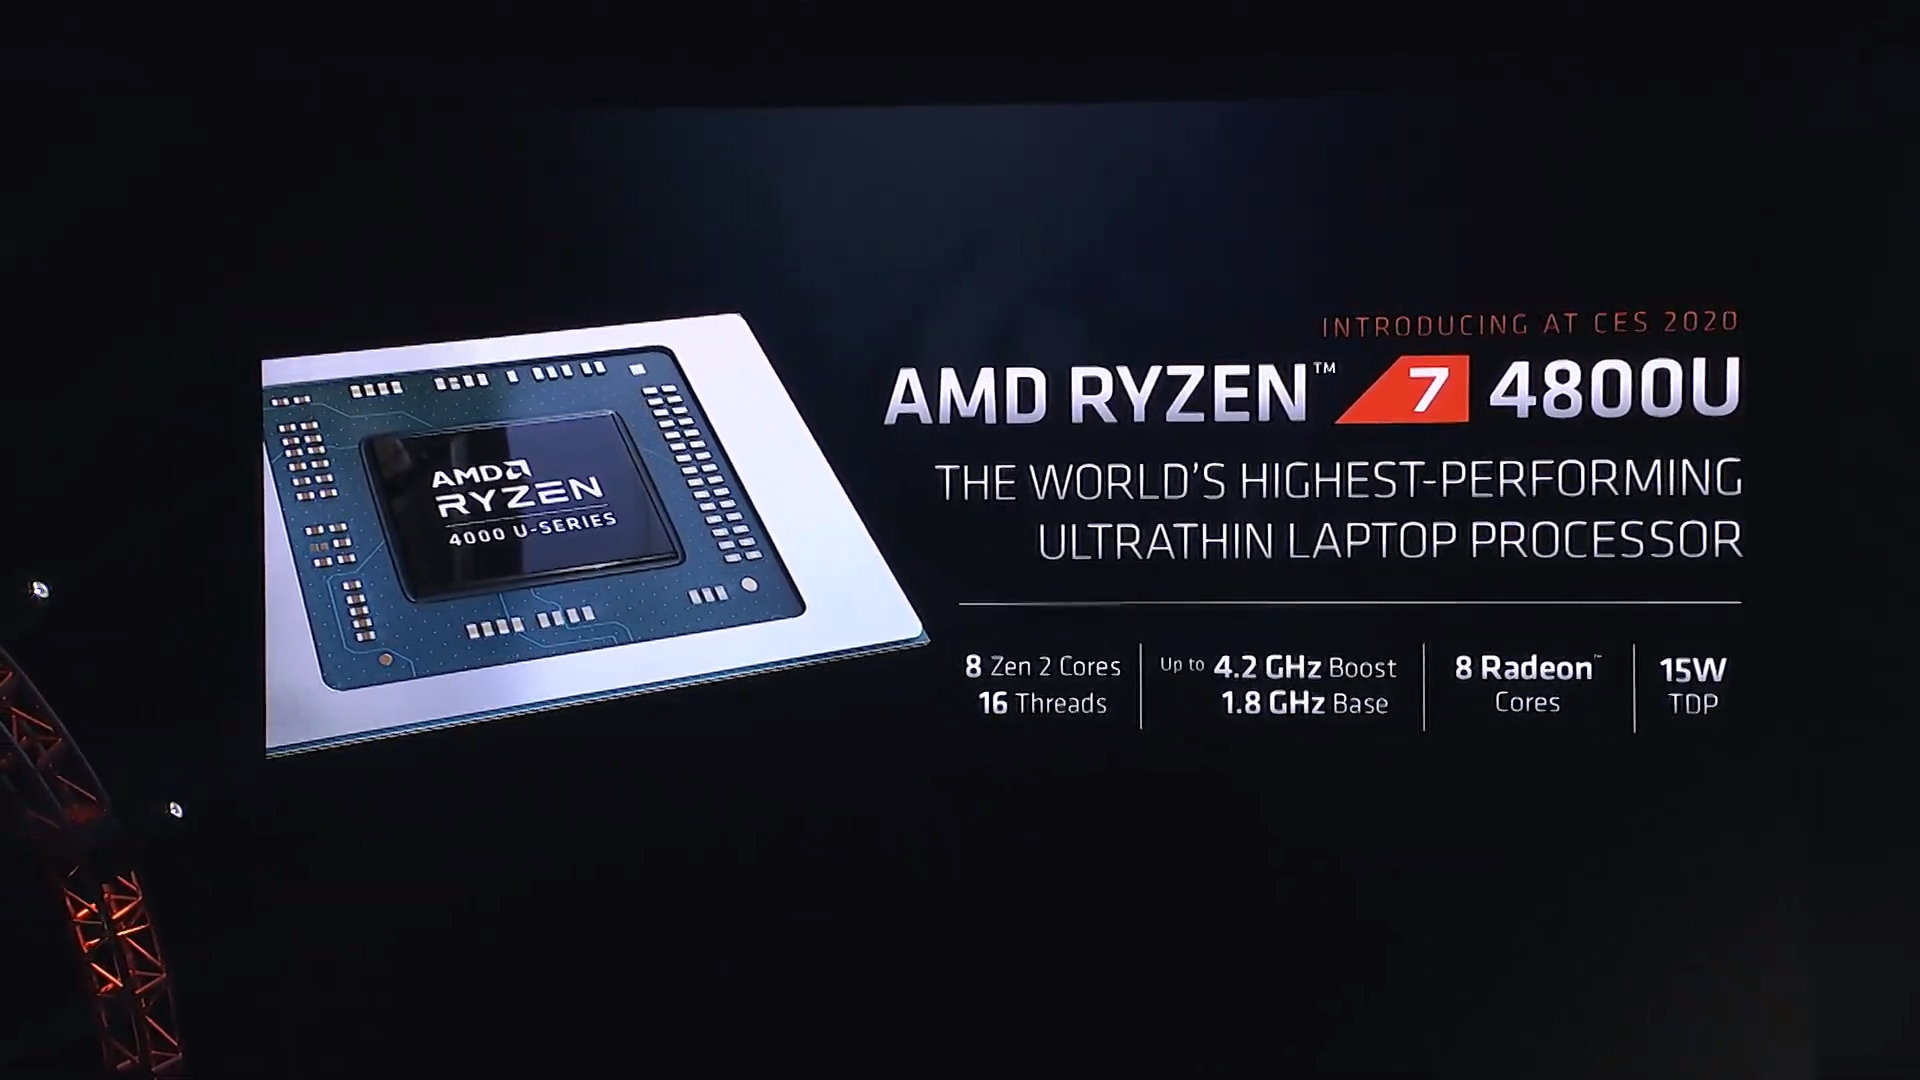 AMD Ryzen 4800U